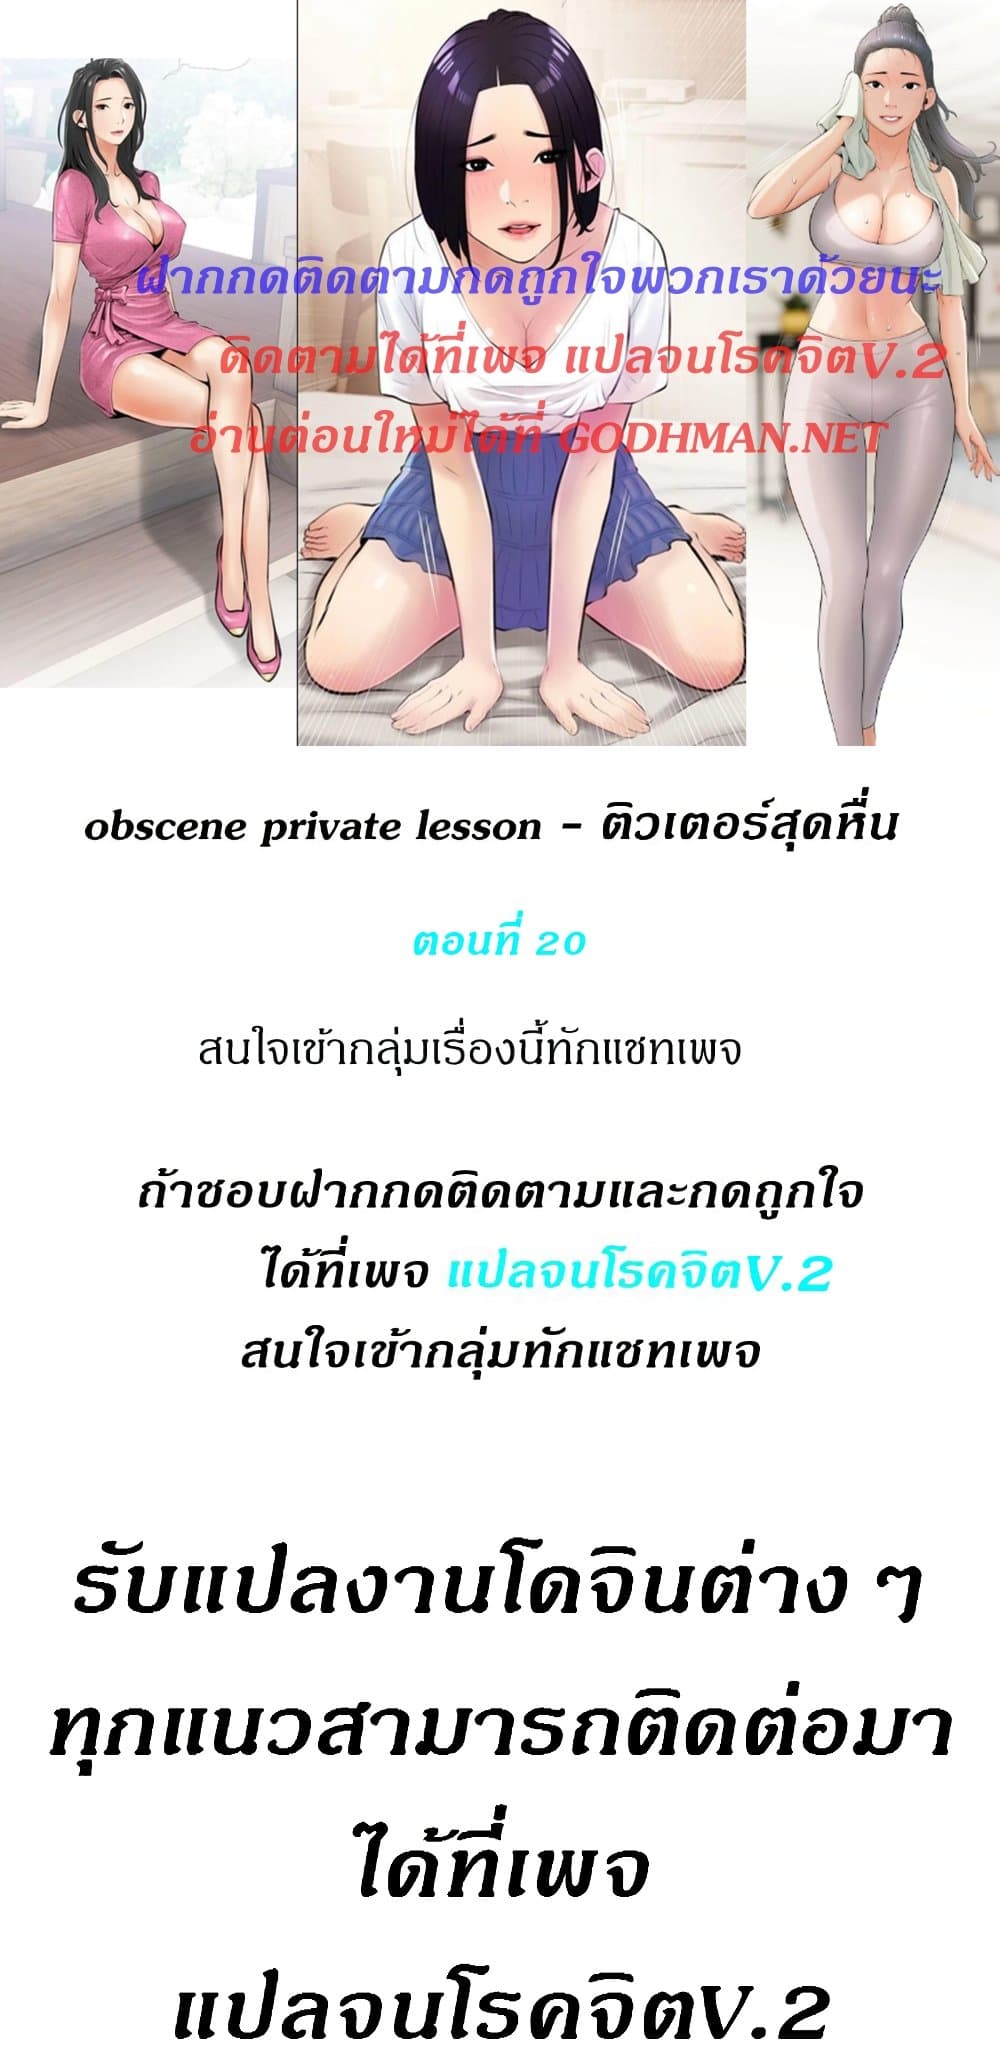 Obscene Private Lesson01